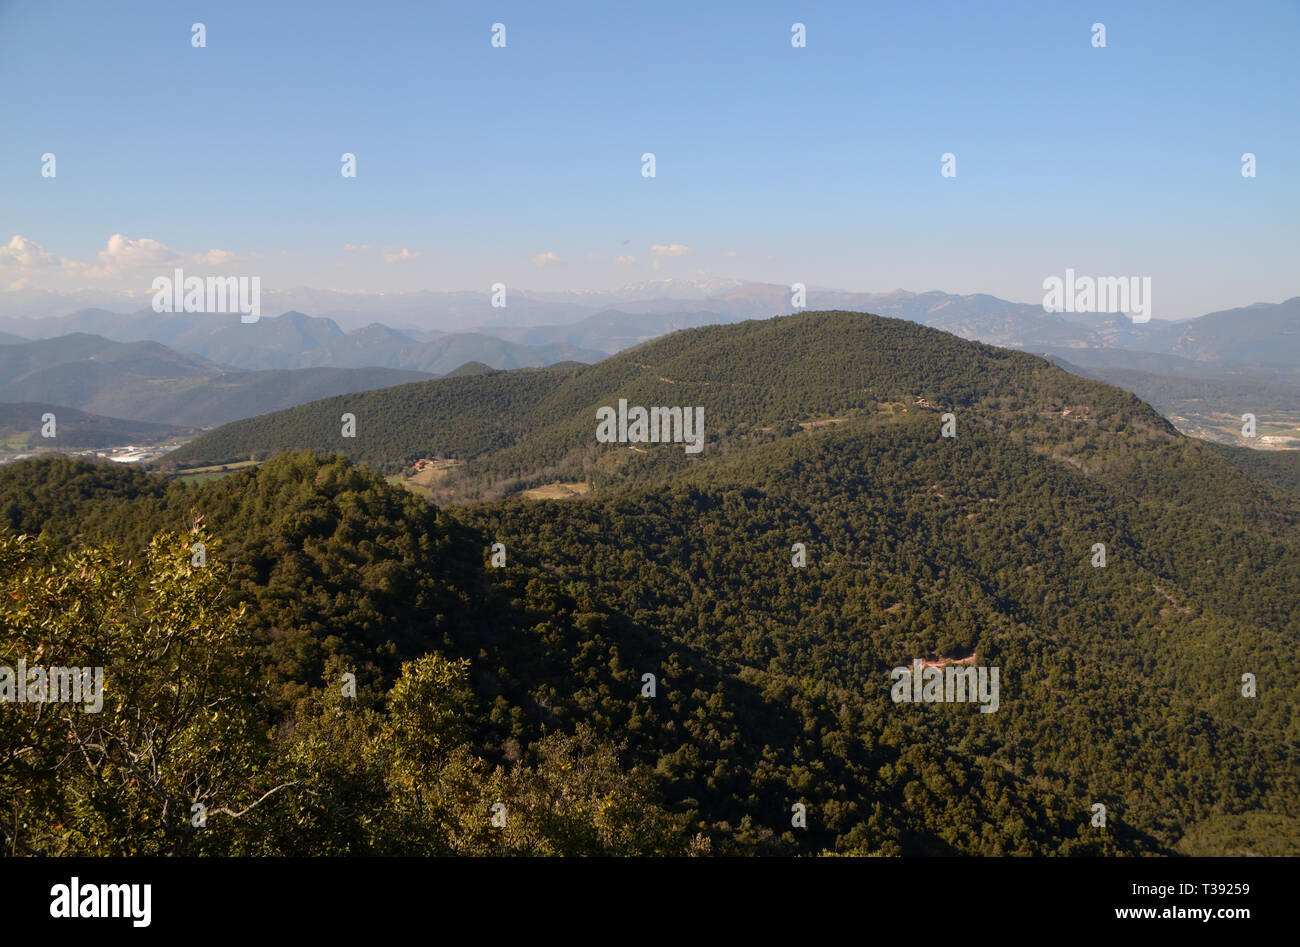 Un paysage de collines couvertes d'arbres dans la région de l'Espagne de la Garrotxa Banque D'Images